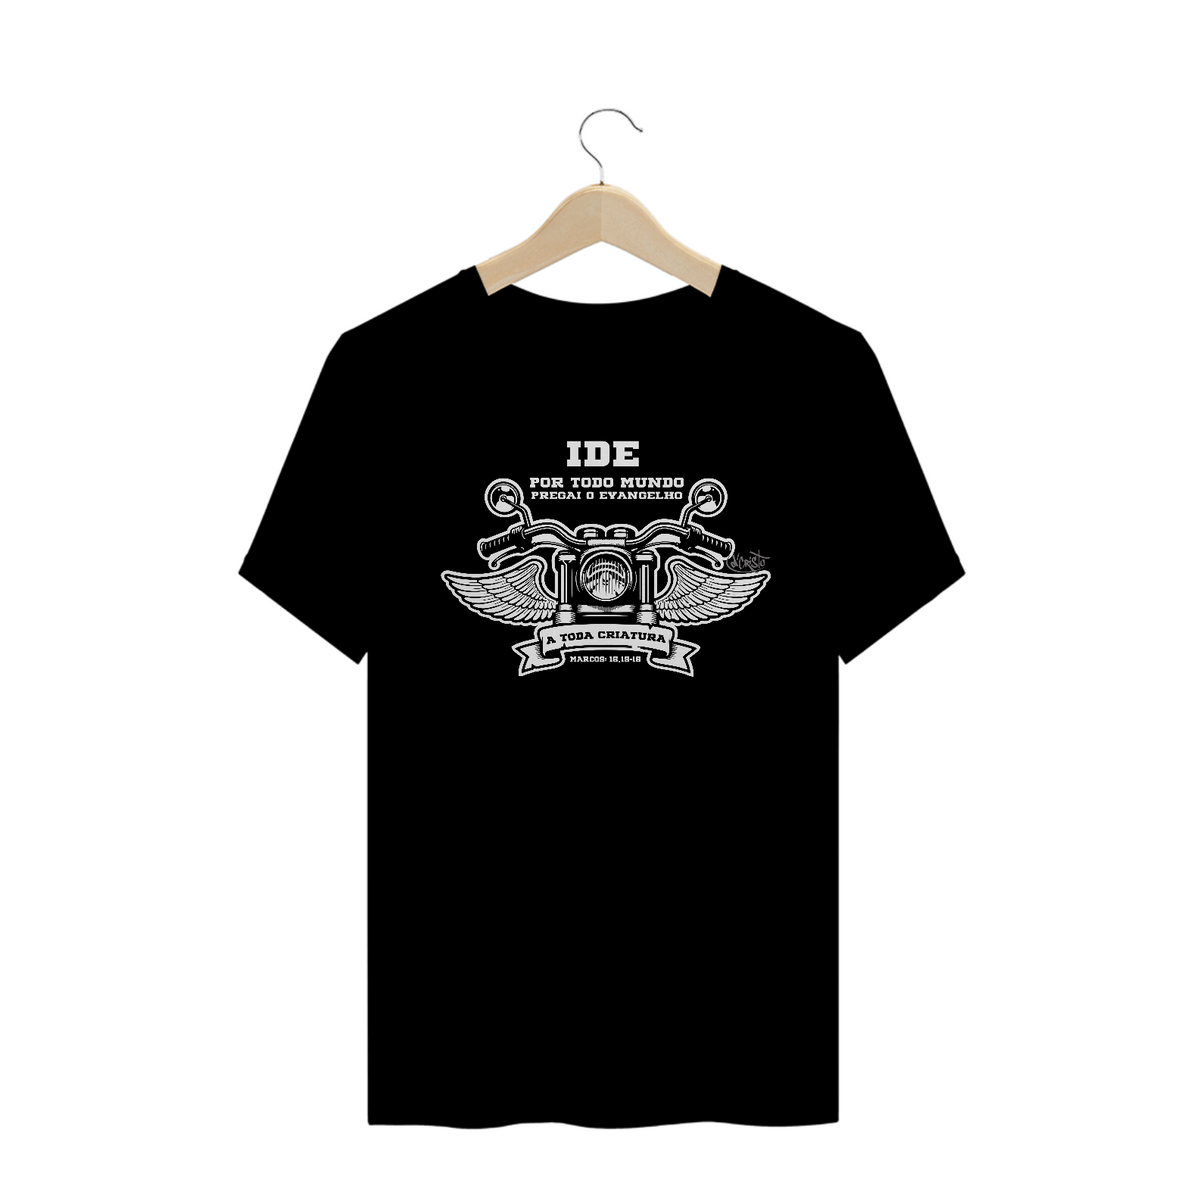 Nome do produto: Camiseta IDE (cores escuras)